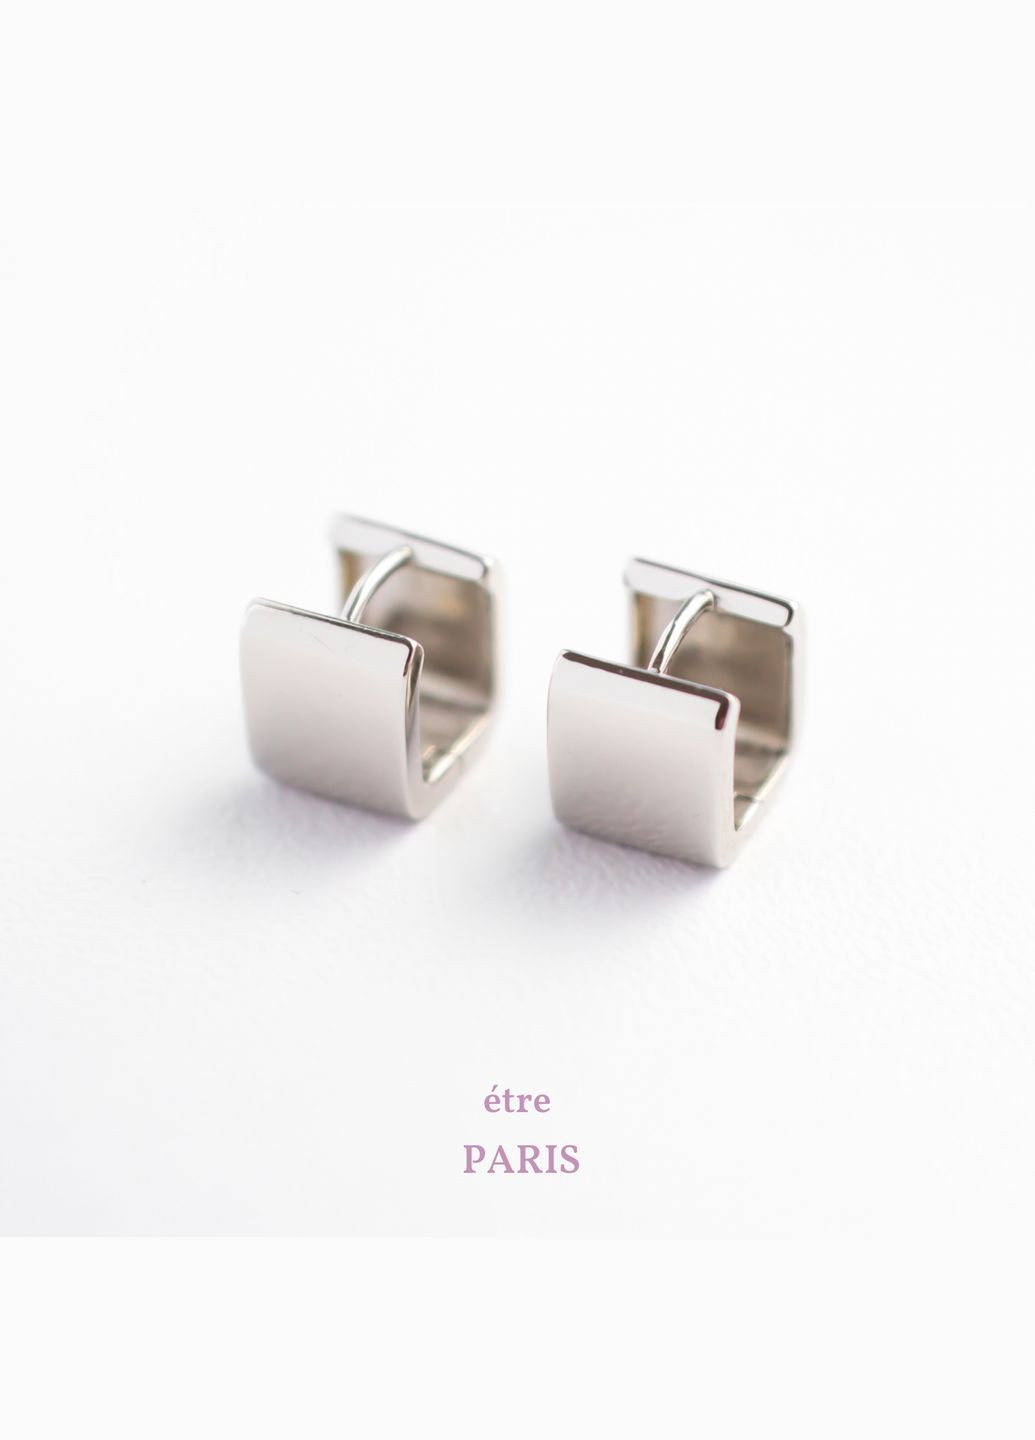 Срібні S925 сережки квадратні, модні стильні сережки без каміння мінімалістичні, подарунок дівчині на день народження СС23 Etre (292401693)